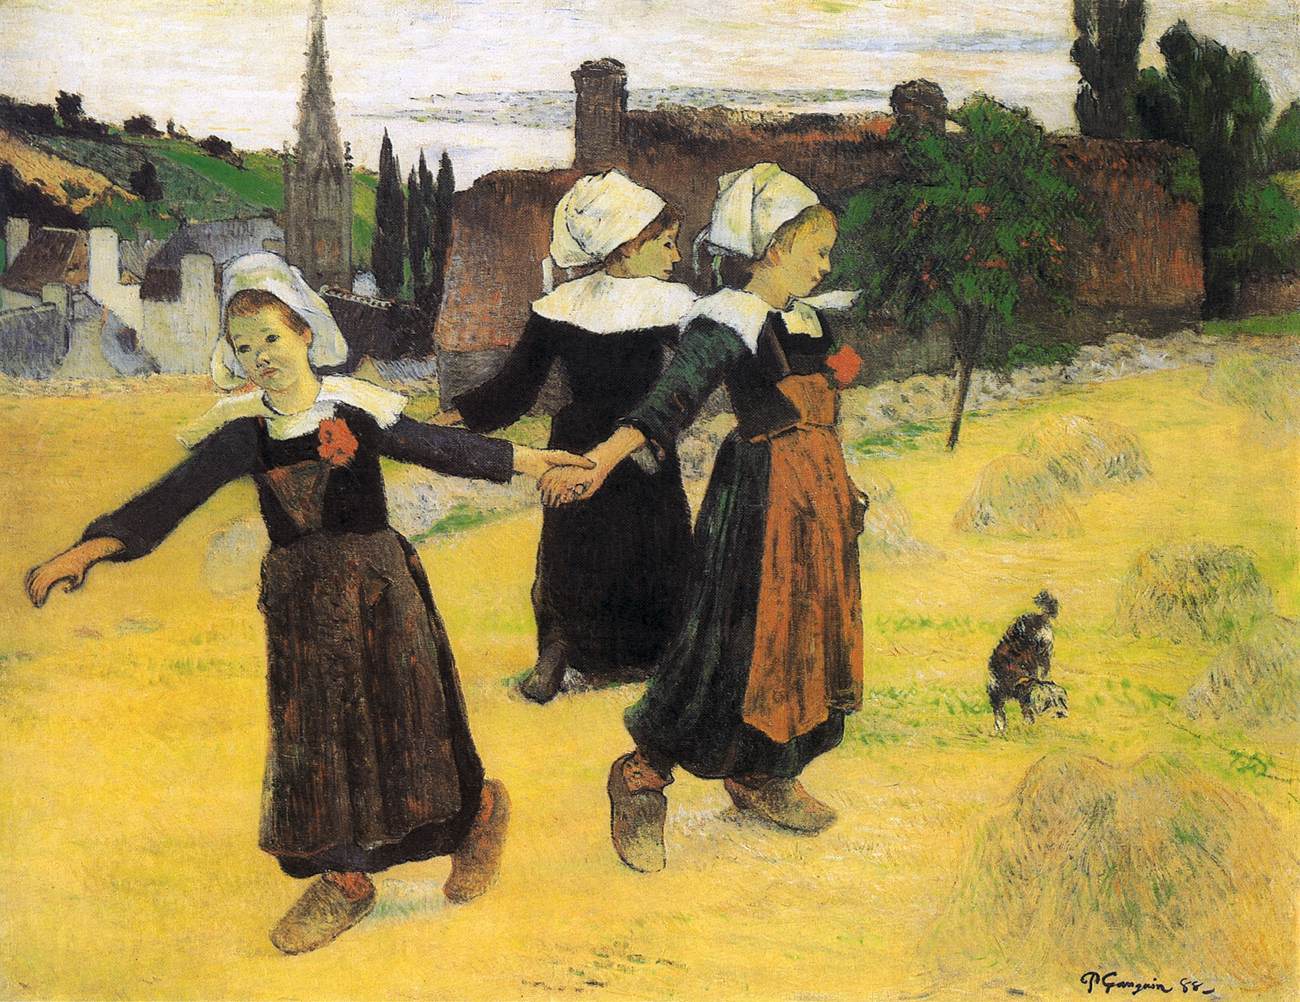 Breton piger danser